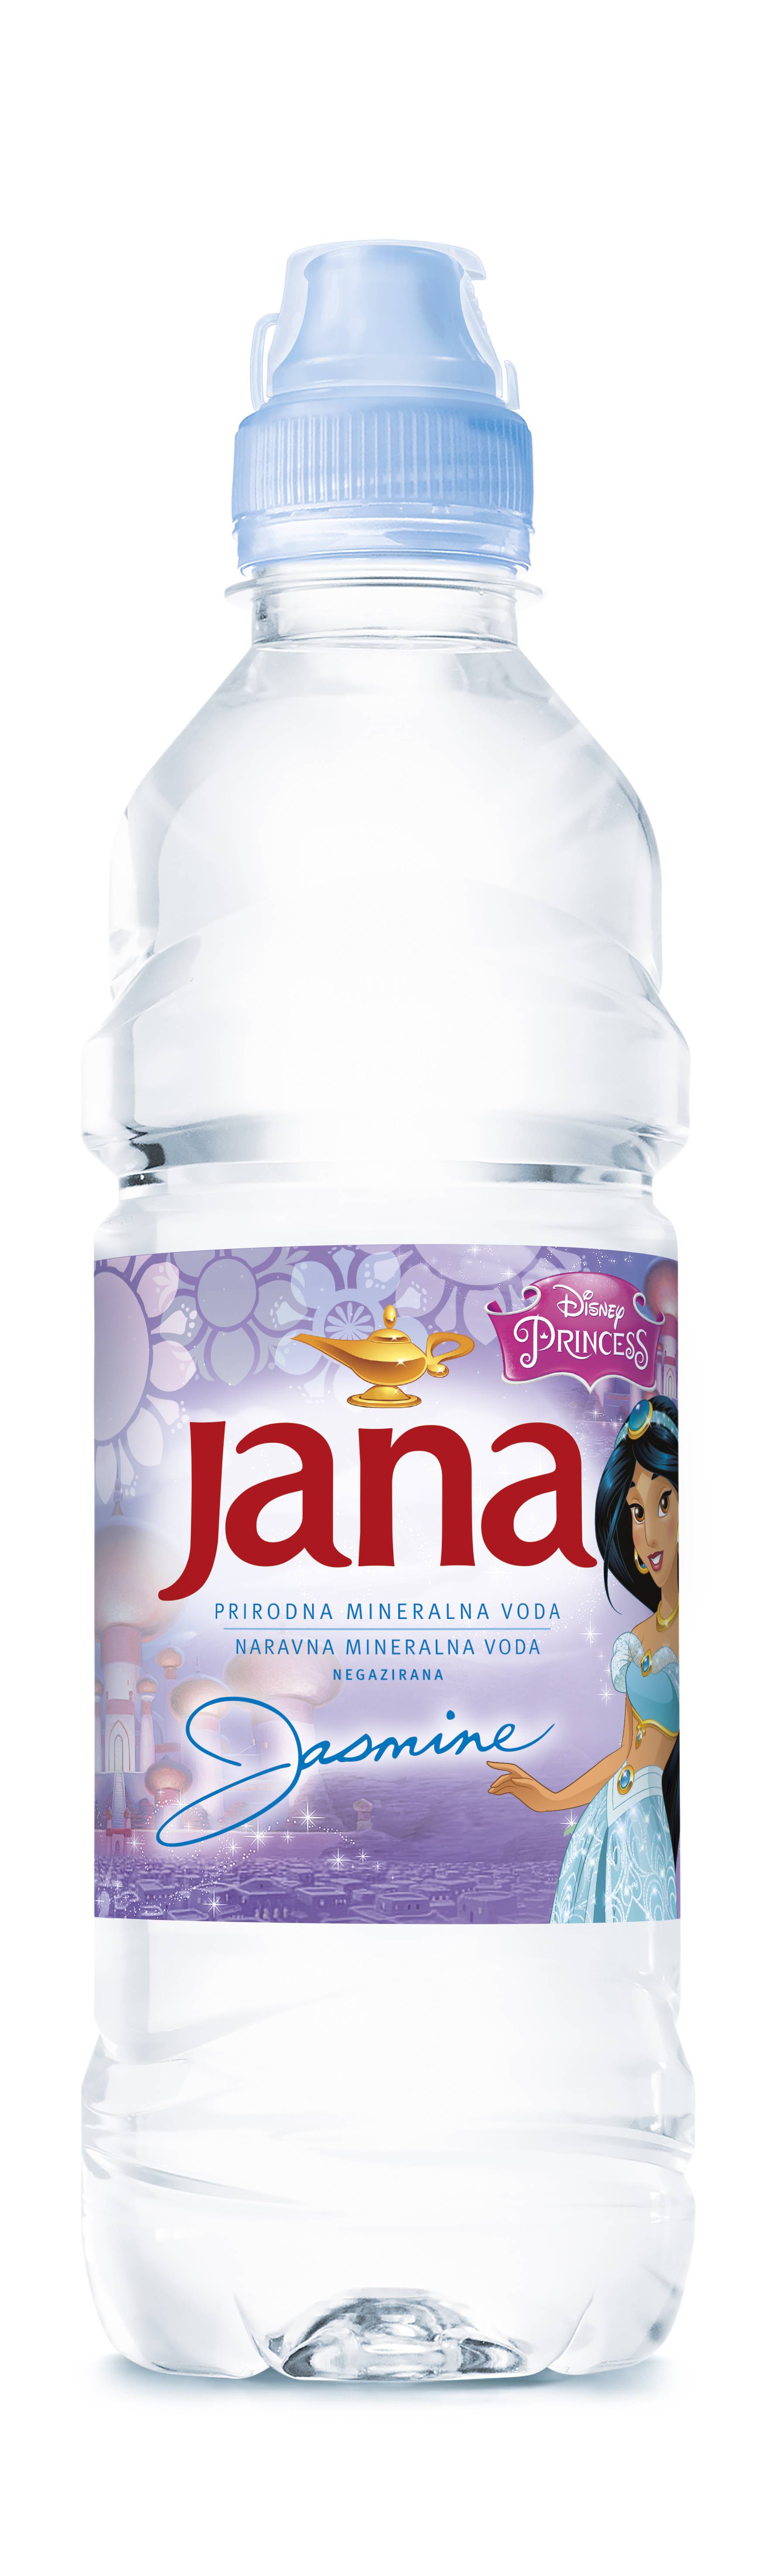 Jana Disney princeze - novo izdanje Jane